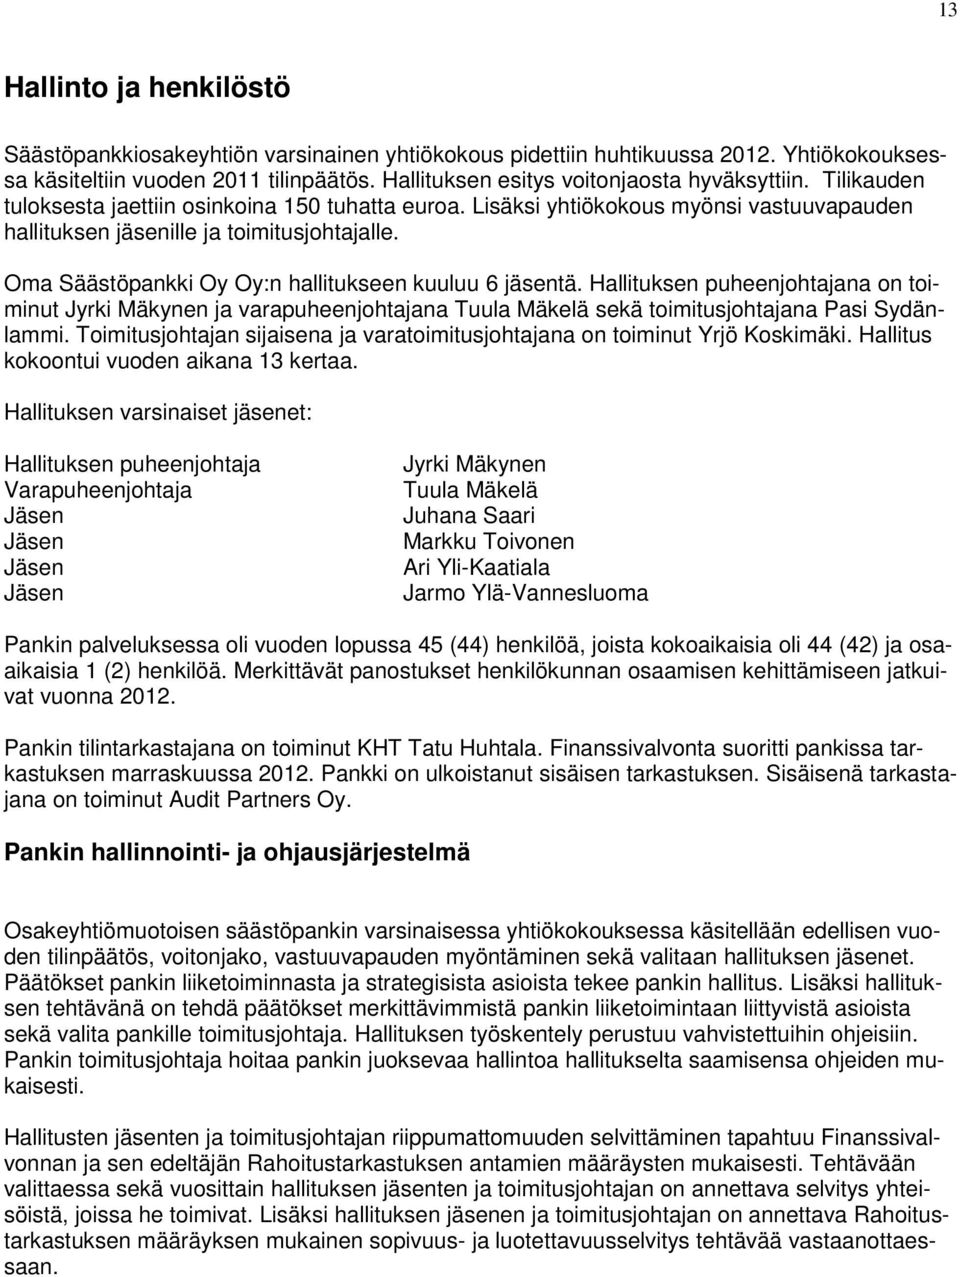 Oma Säästöpankki Oy Oy:n hallitukseen kuuluu 6 jäsentä. Hallituksen puheenjohtajana on toiminut Jyrki Mäkynen ja varapuheenjohtajana Tuula Mäkelä sekä toimitusjohtajana Pasi Sydänlammi.